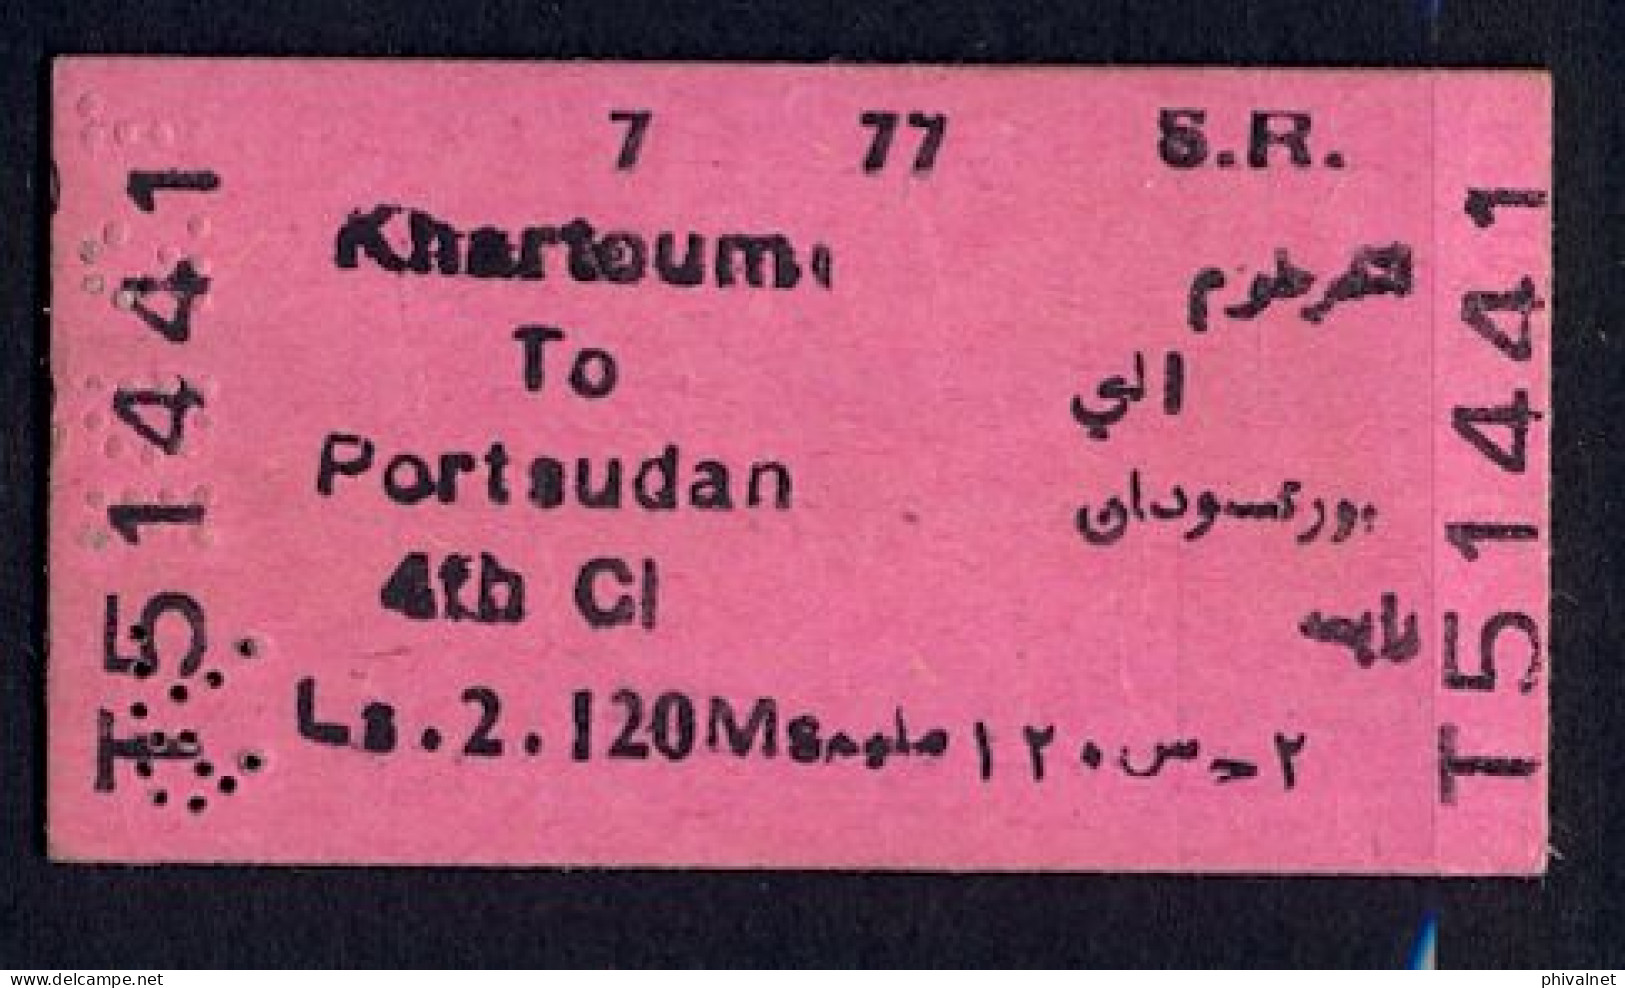 SOUDAN / SUDAN , KHARTOUM - PORT SUDAN , TICKET DE FERROCARRIL , TREN , TRAIN , RAILWAYS - Mondo